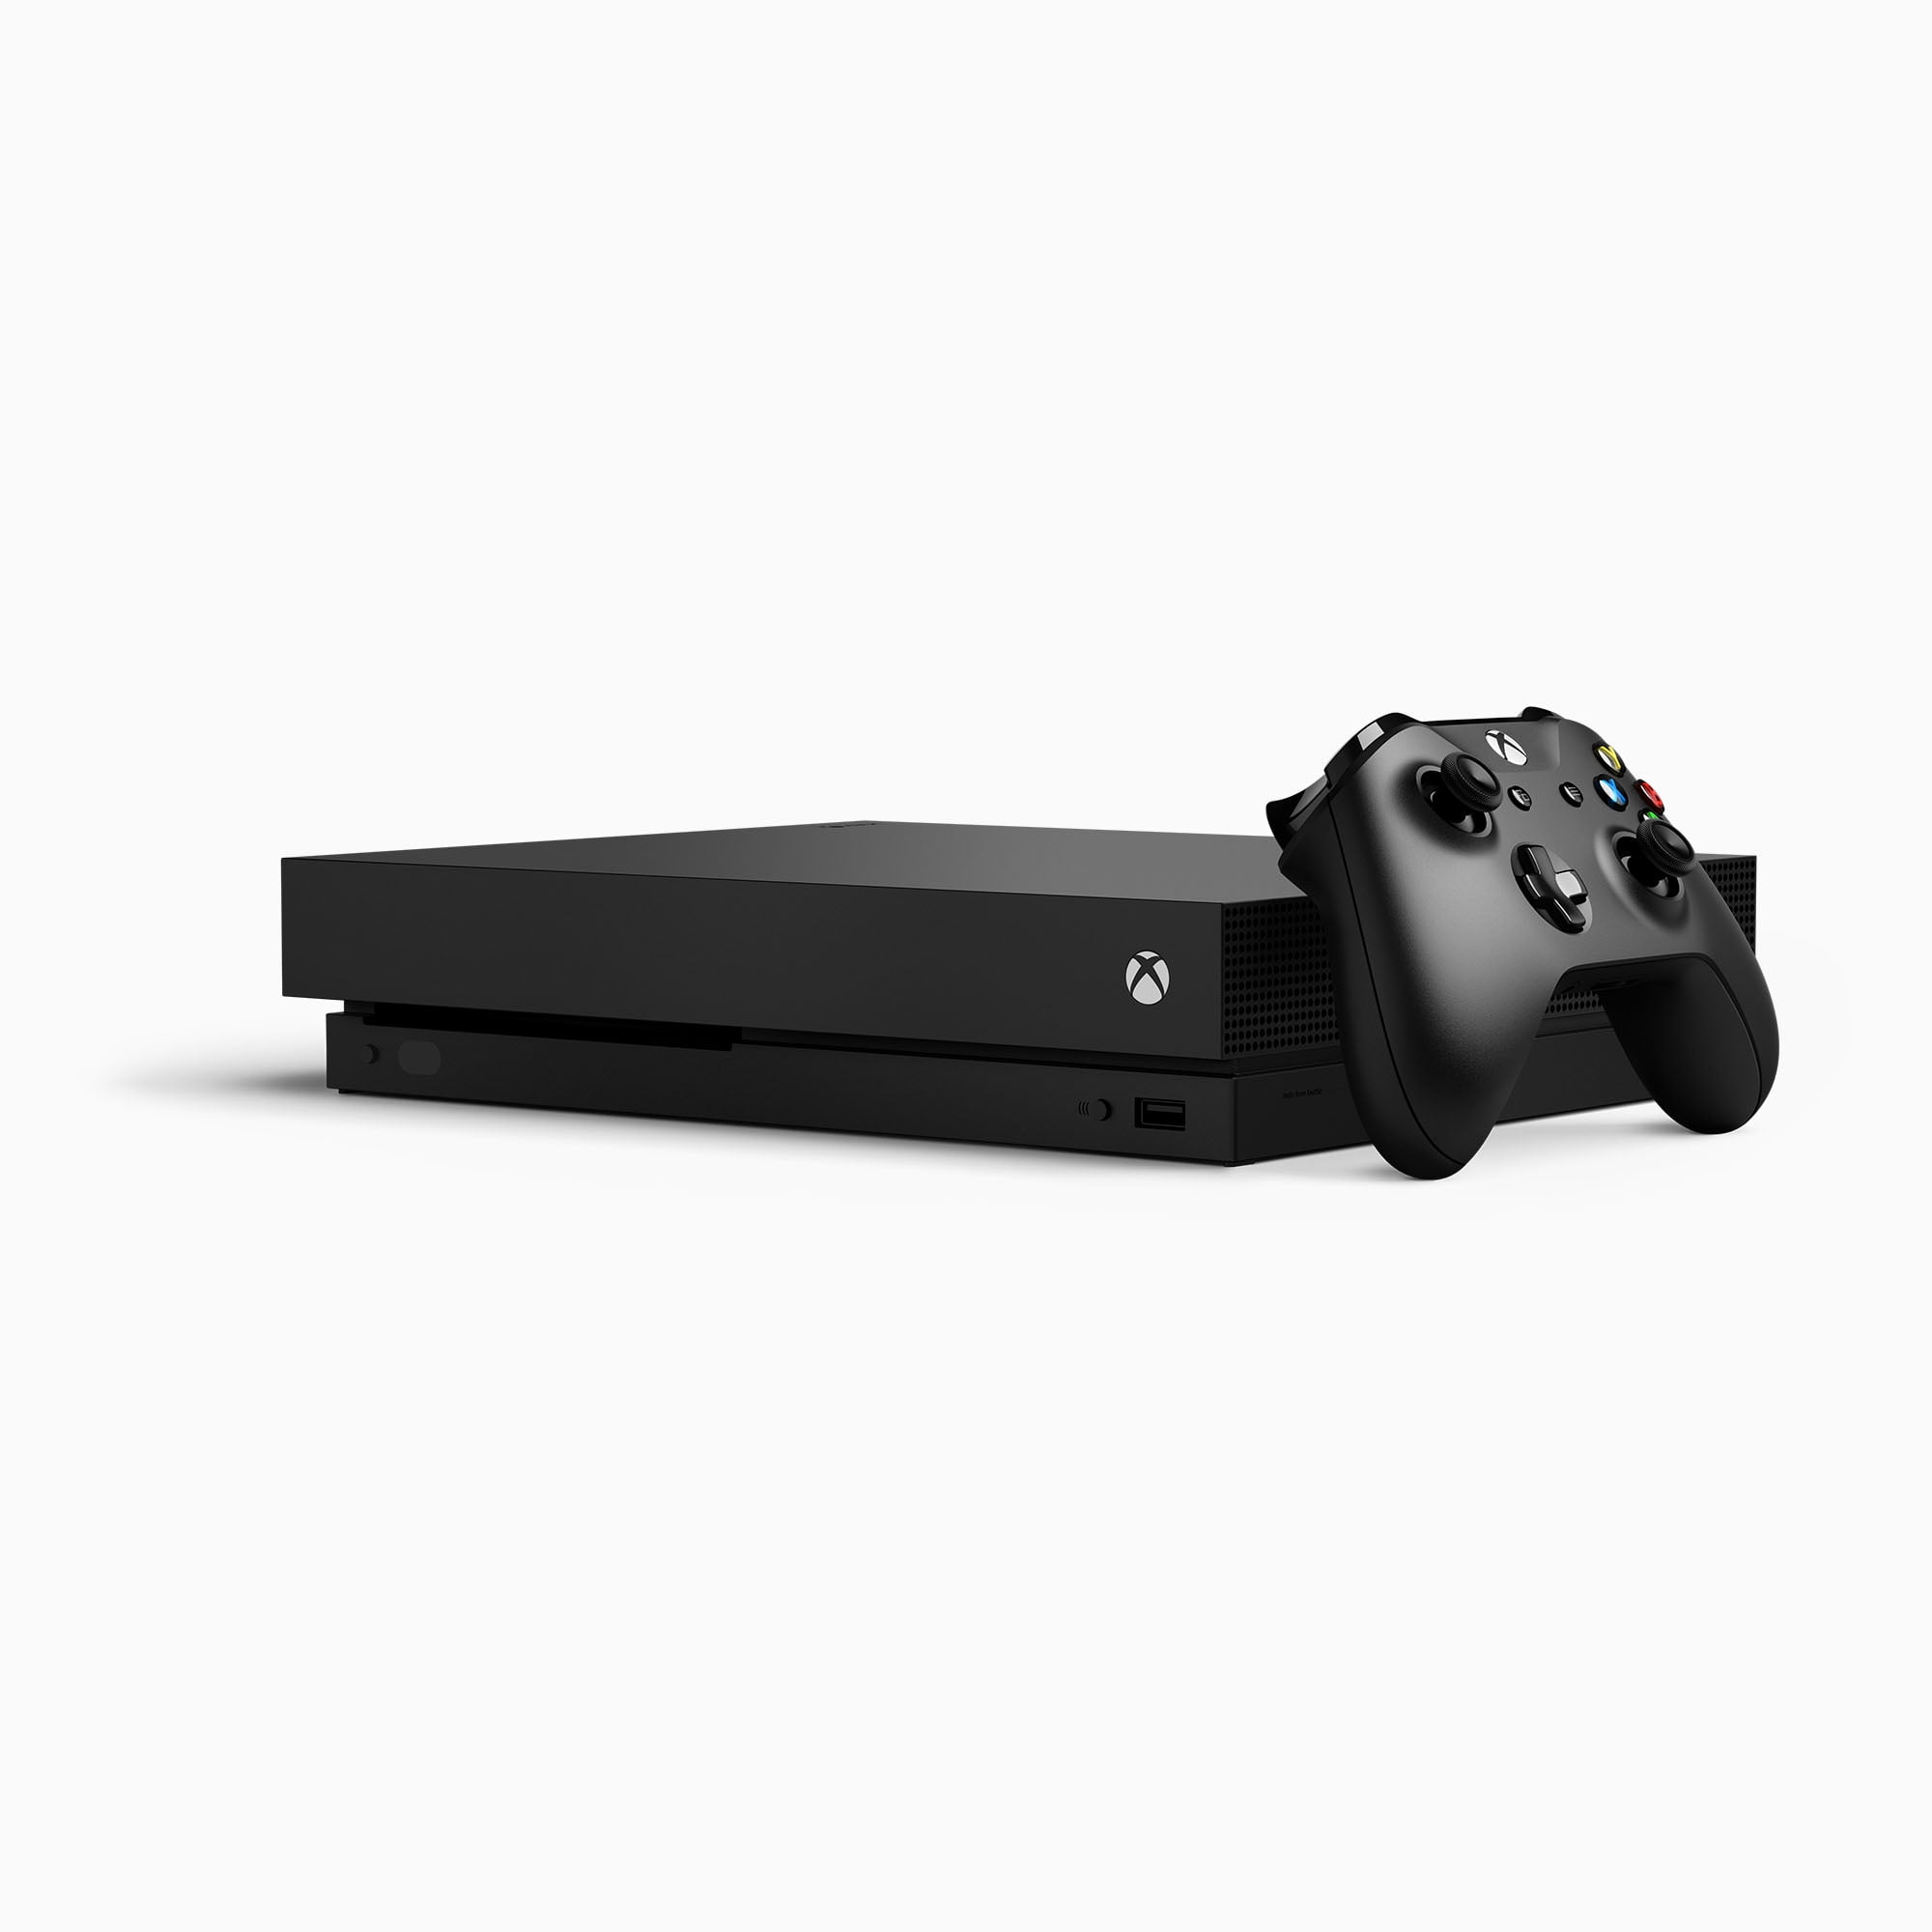 Xbox X 1TB Console, Black, CYV-00001 - Walmart.com